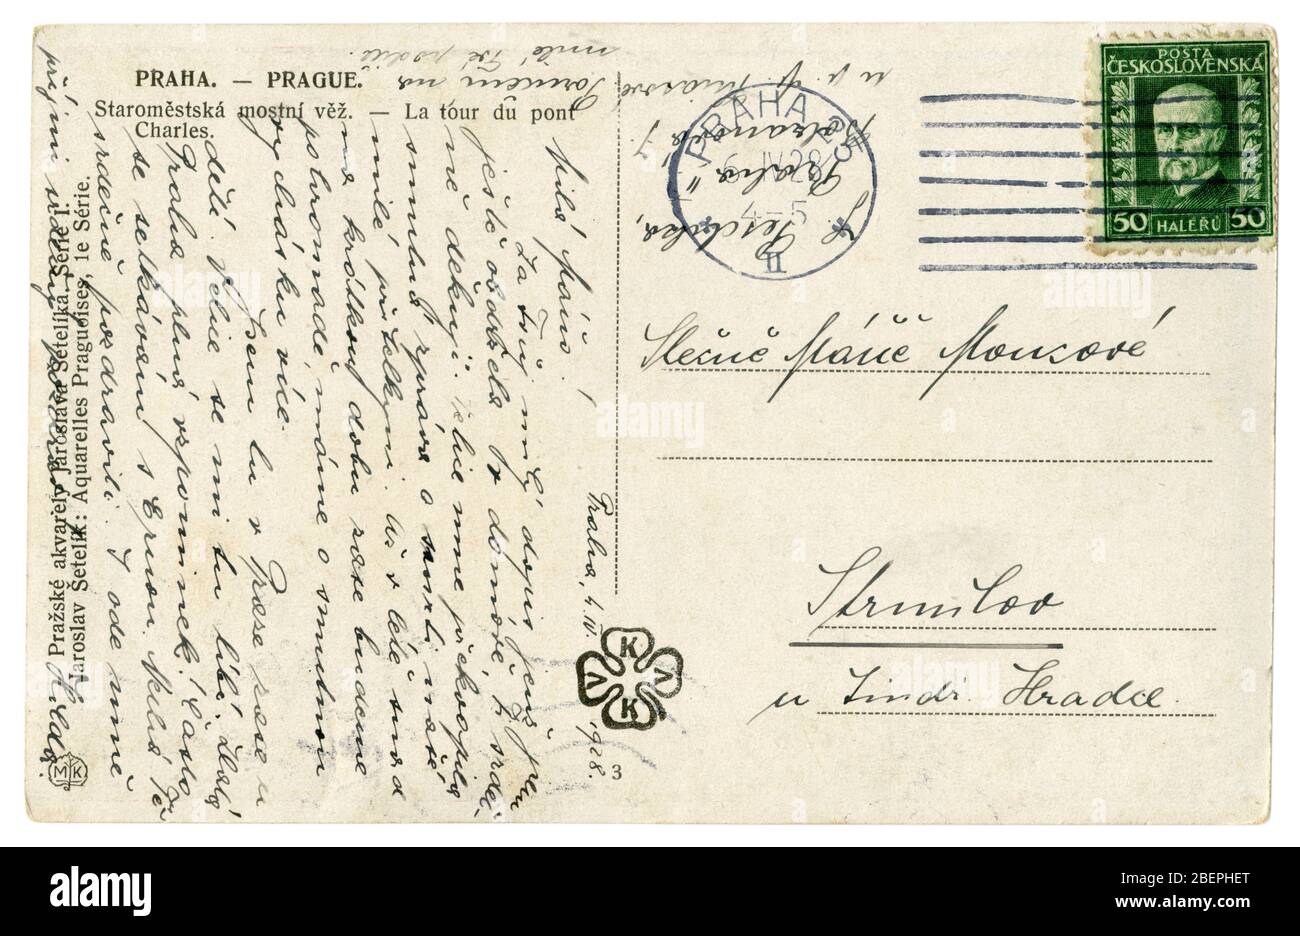 L'inverse d'une carte postale historique tchécoslovaque: Texte manuscrit à l'encre, timbre-poste du président Tomáš Garrigue Masaryk, Prague, 1928 Banque D'Images